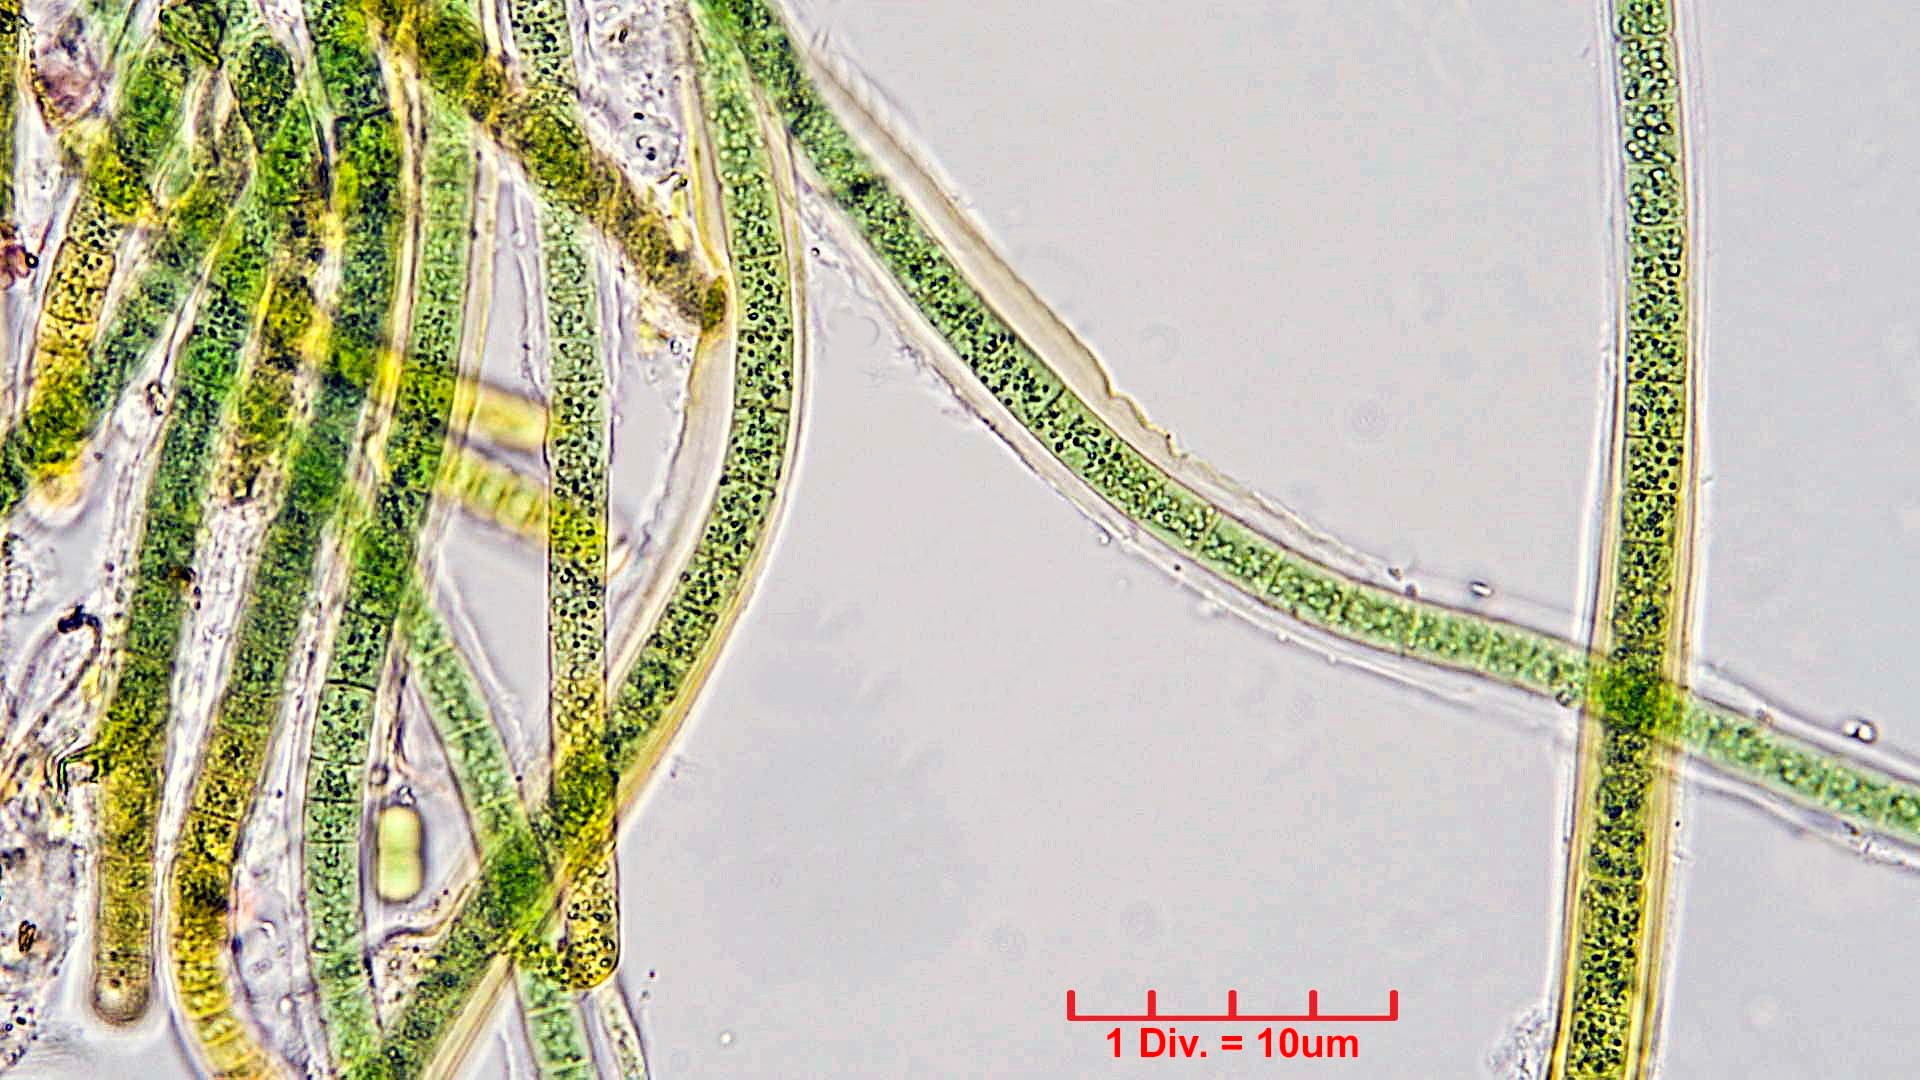 ././Cyanobacteria/Nostocales/Tolypothrichaceae/Tolypothrix/calcarata/tolypothrix-calcarata-319.jpg